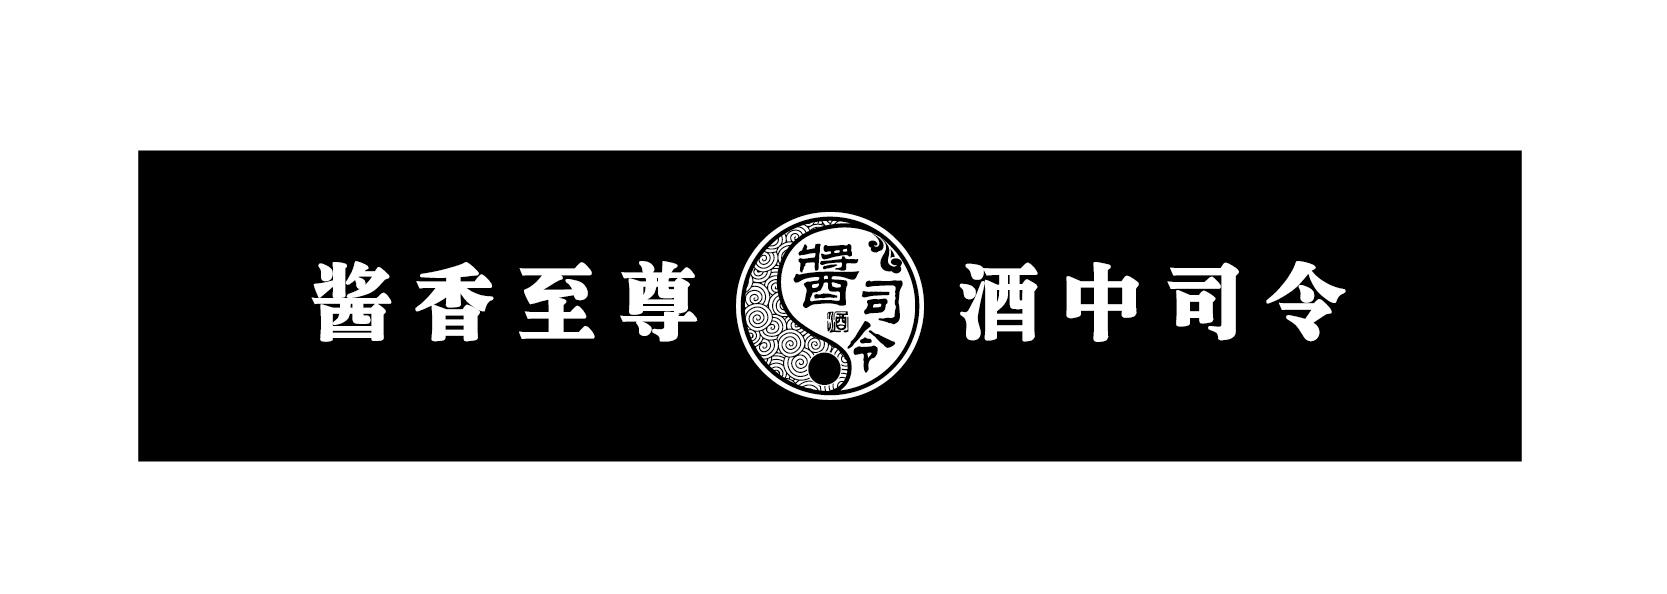 贵州酱 司令酒业销售有限公司办理/代理机构:中国商标专利事务所有限